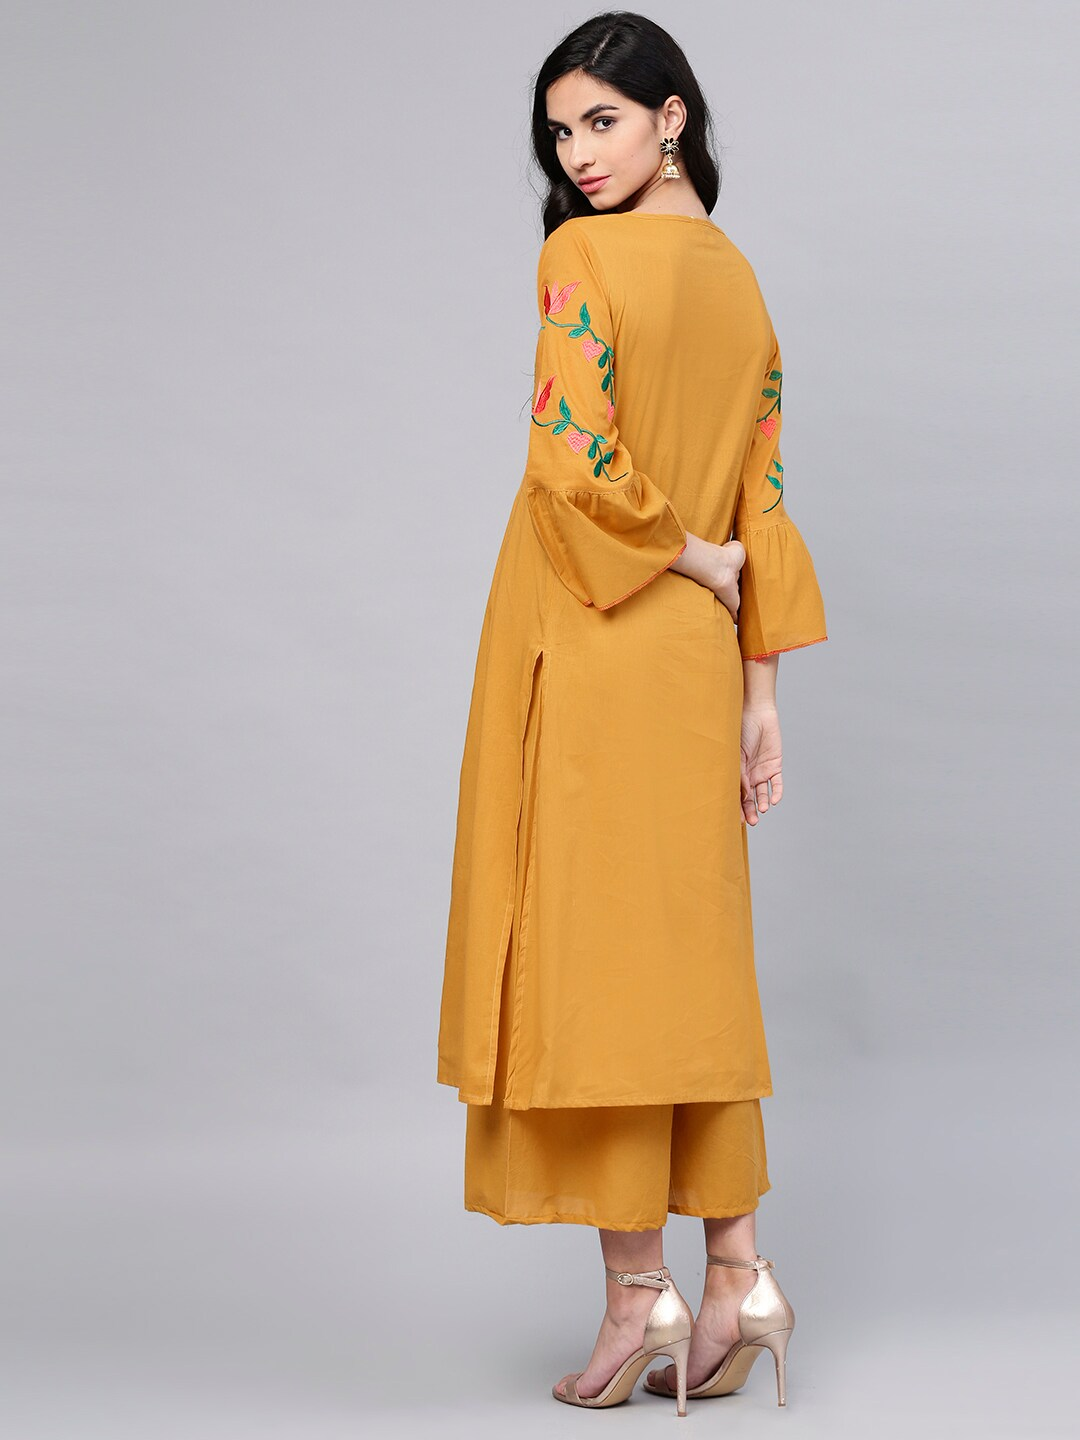 Women's  Mustard Yellow Yoke Design Kurta With Palazzos3 - Wahe-NOOR